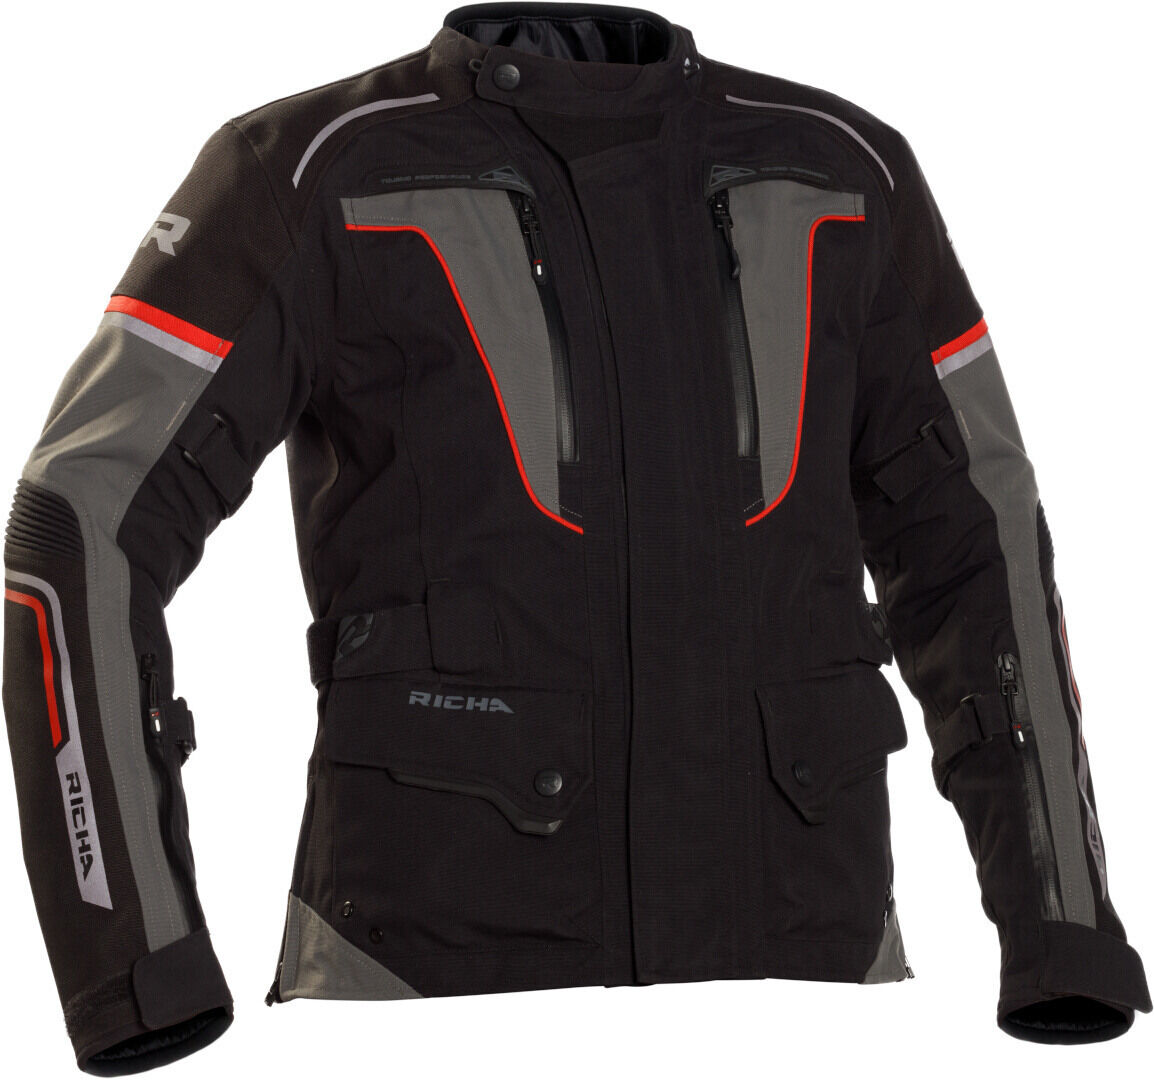 Richa Infinity 2 Pro Chaqueta textil de moto para mujer - Negro Rojo (XL)